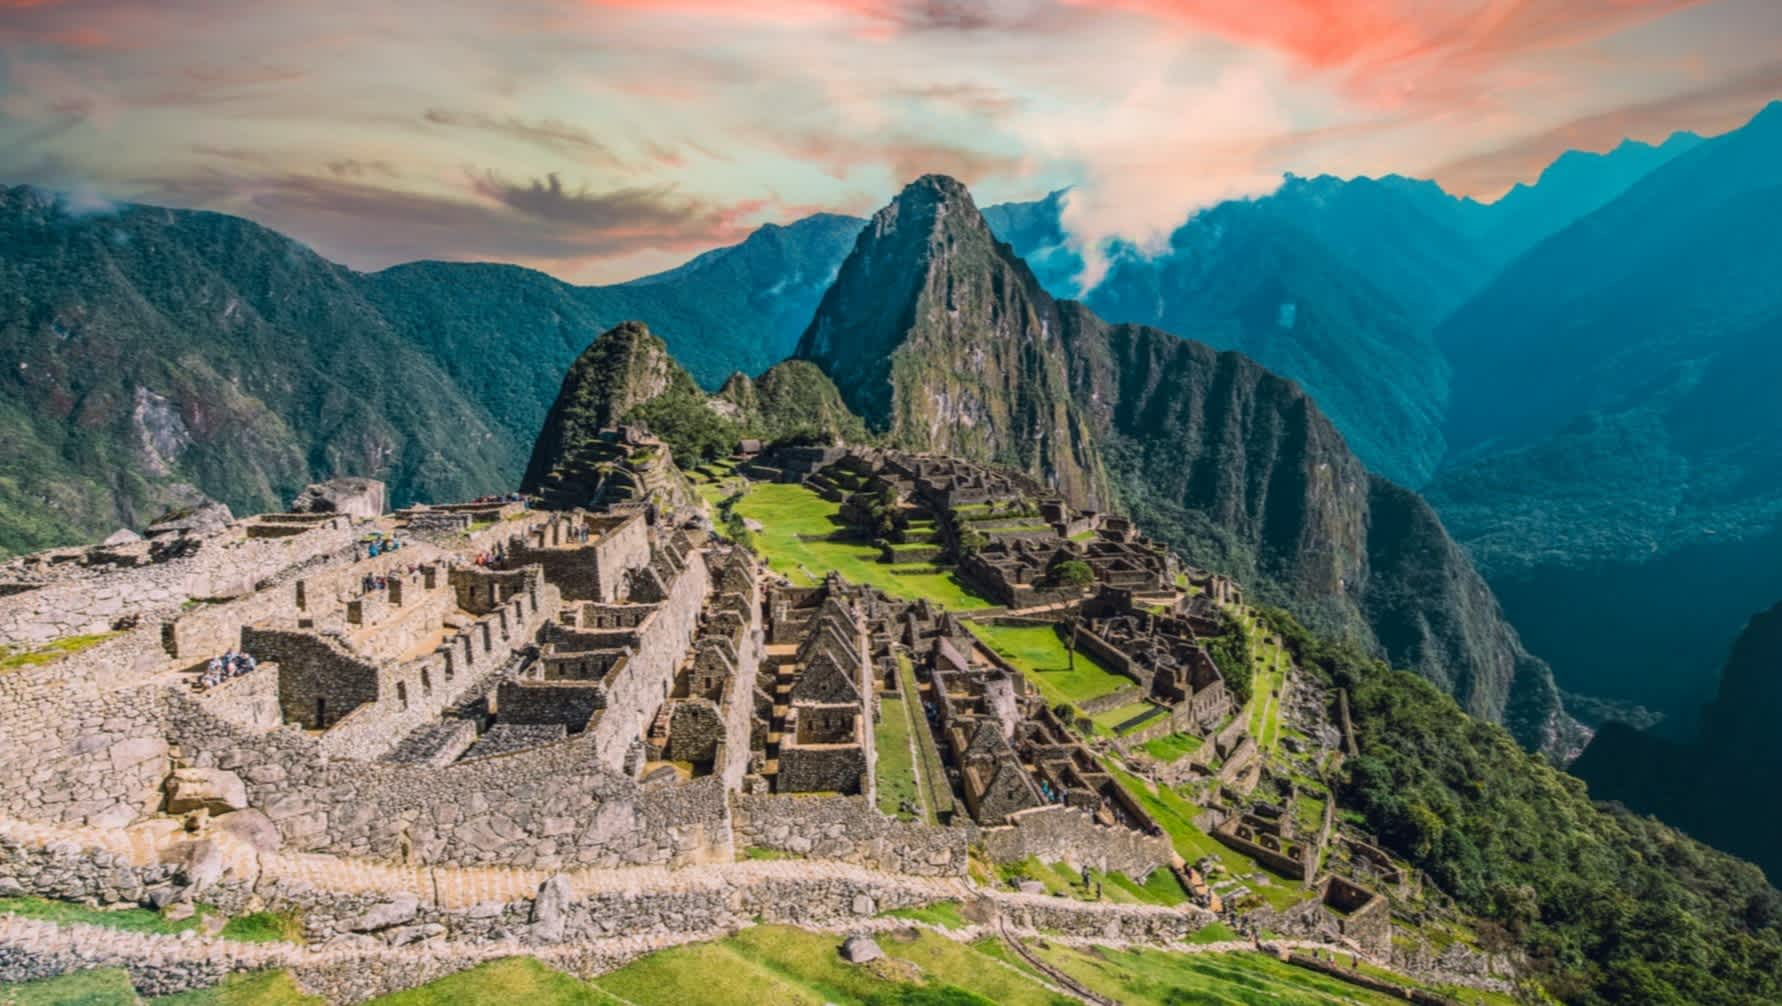 Vue du Machu Picchu, la ville de l'empire Inca, Pérou.

